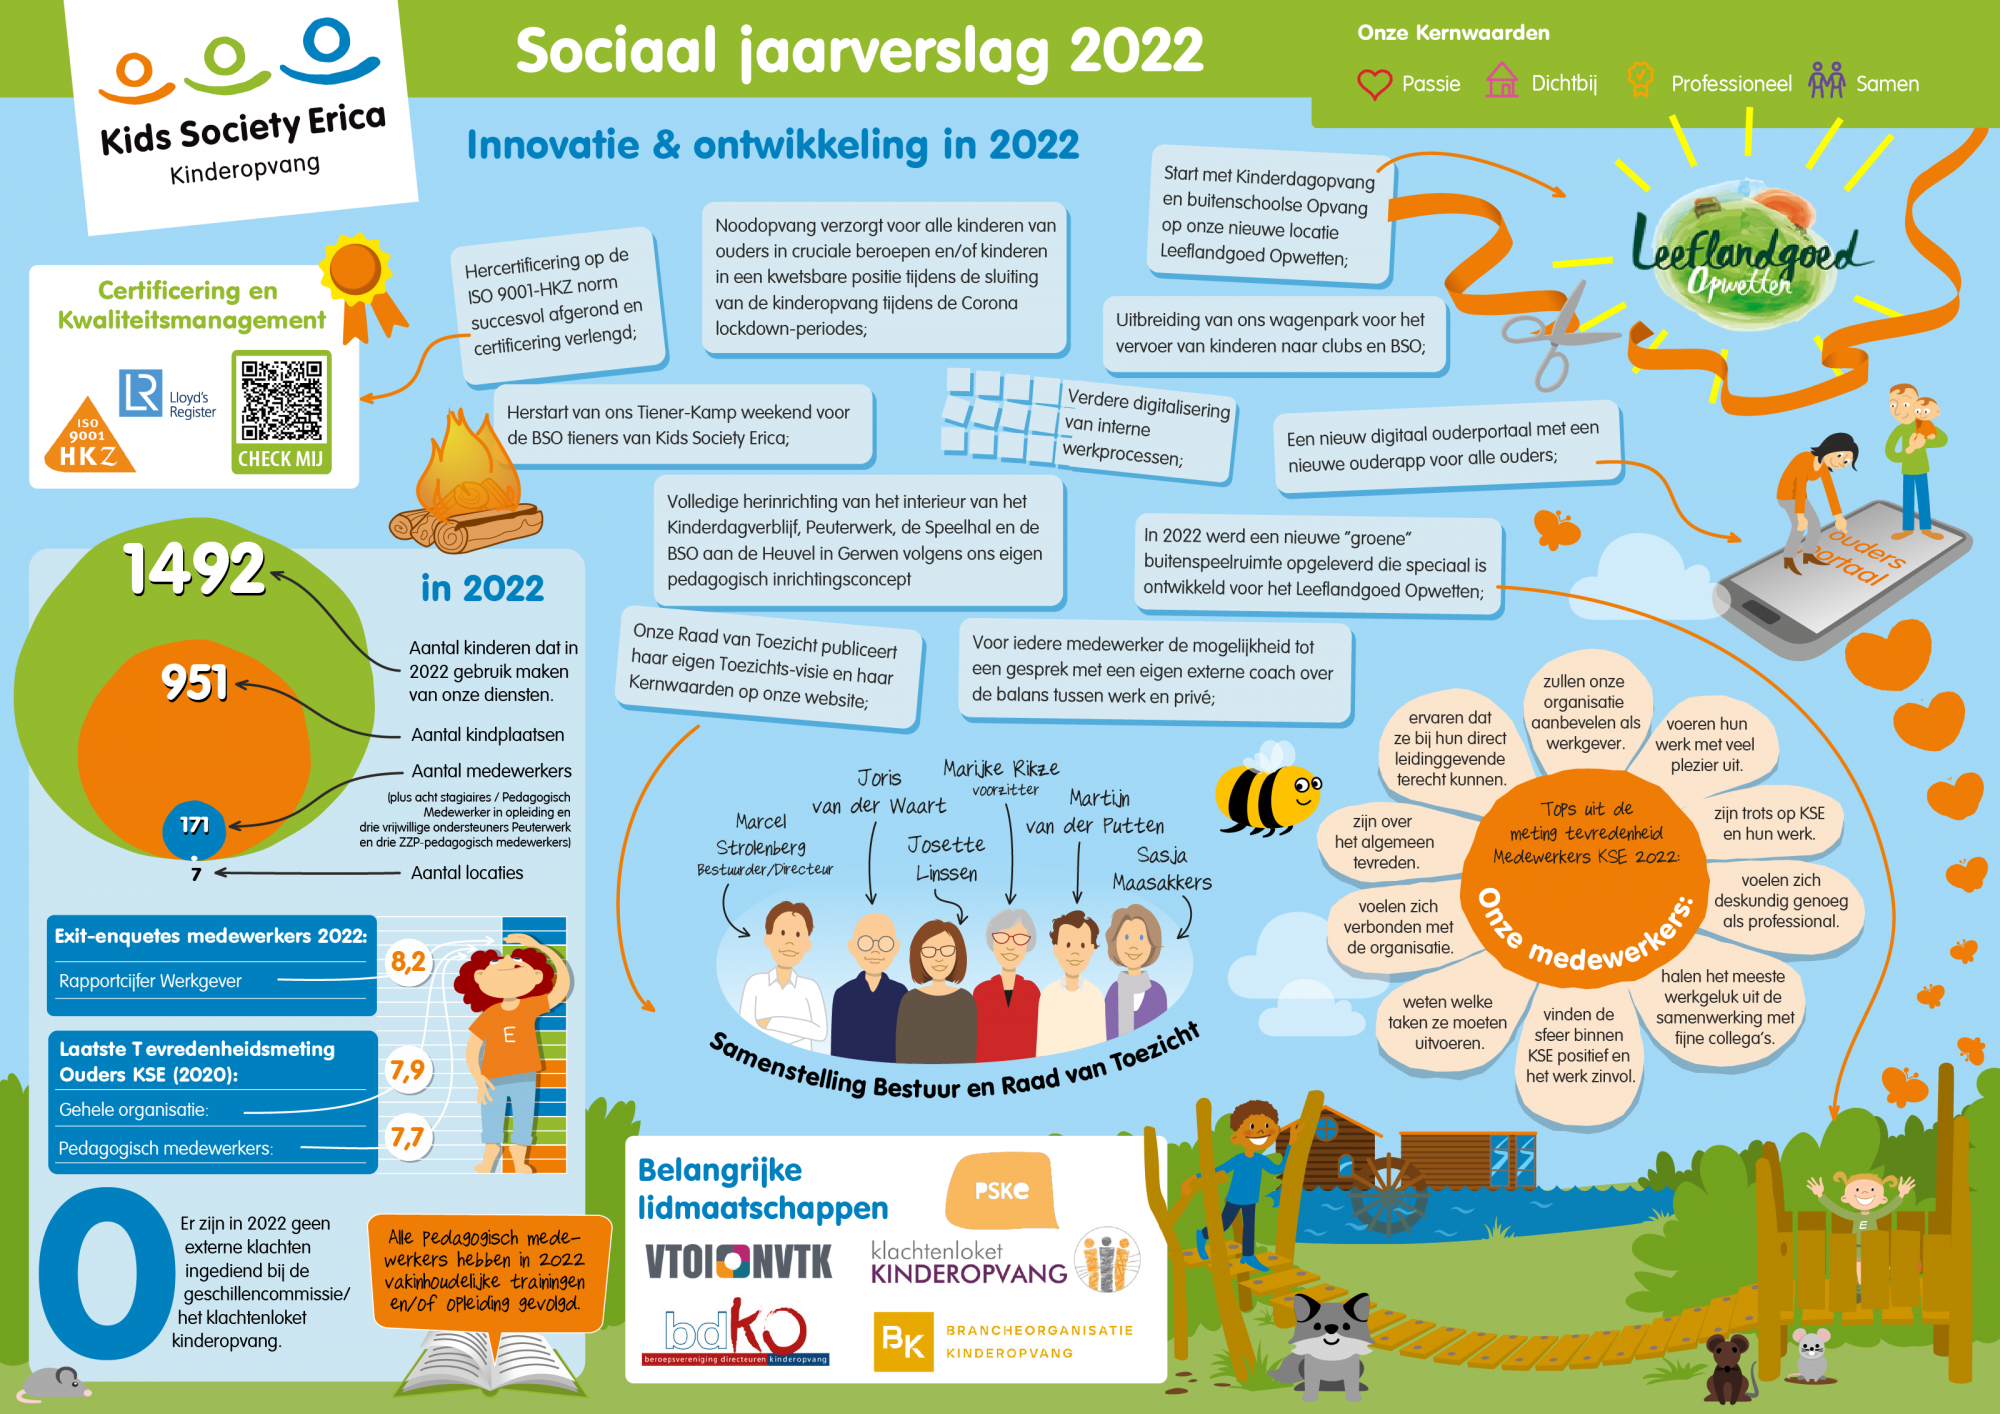 KSE Sociaal jaarverslag 2022 groot.png